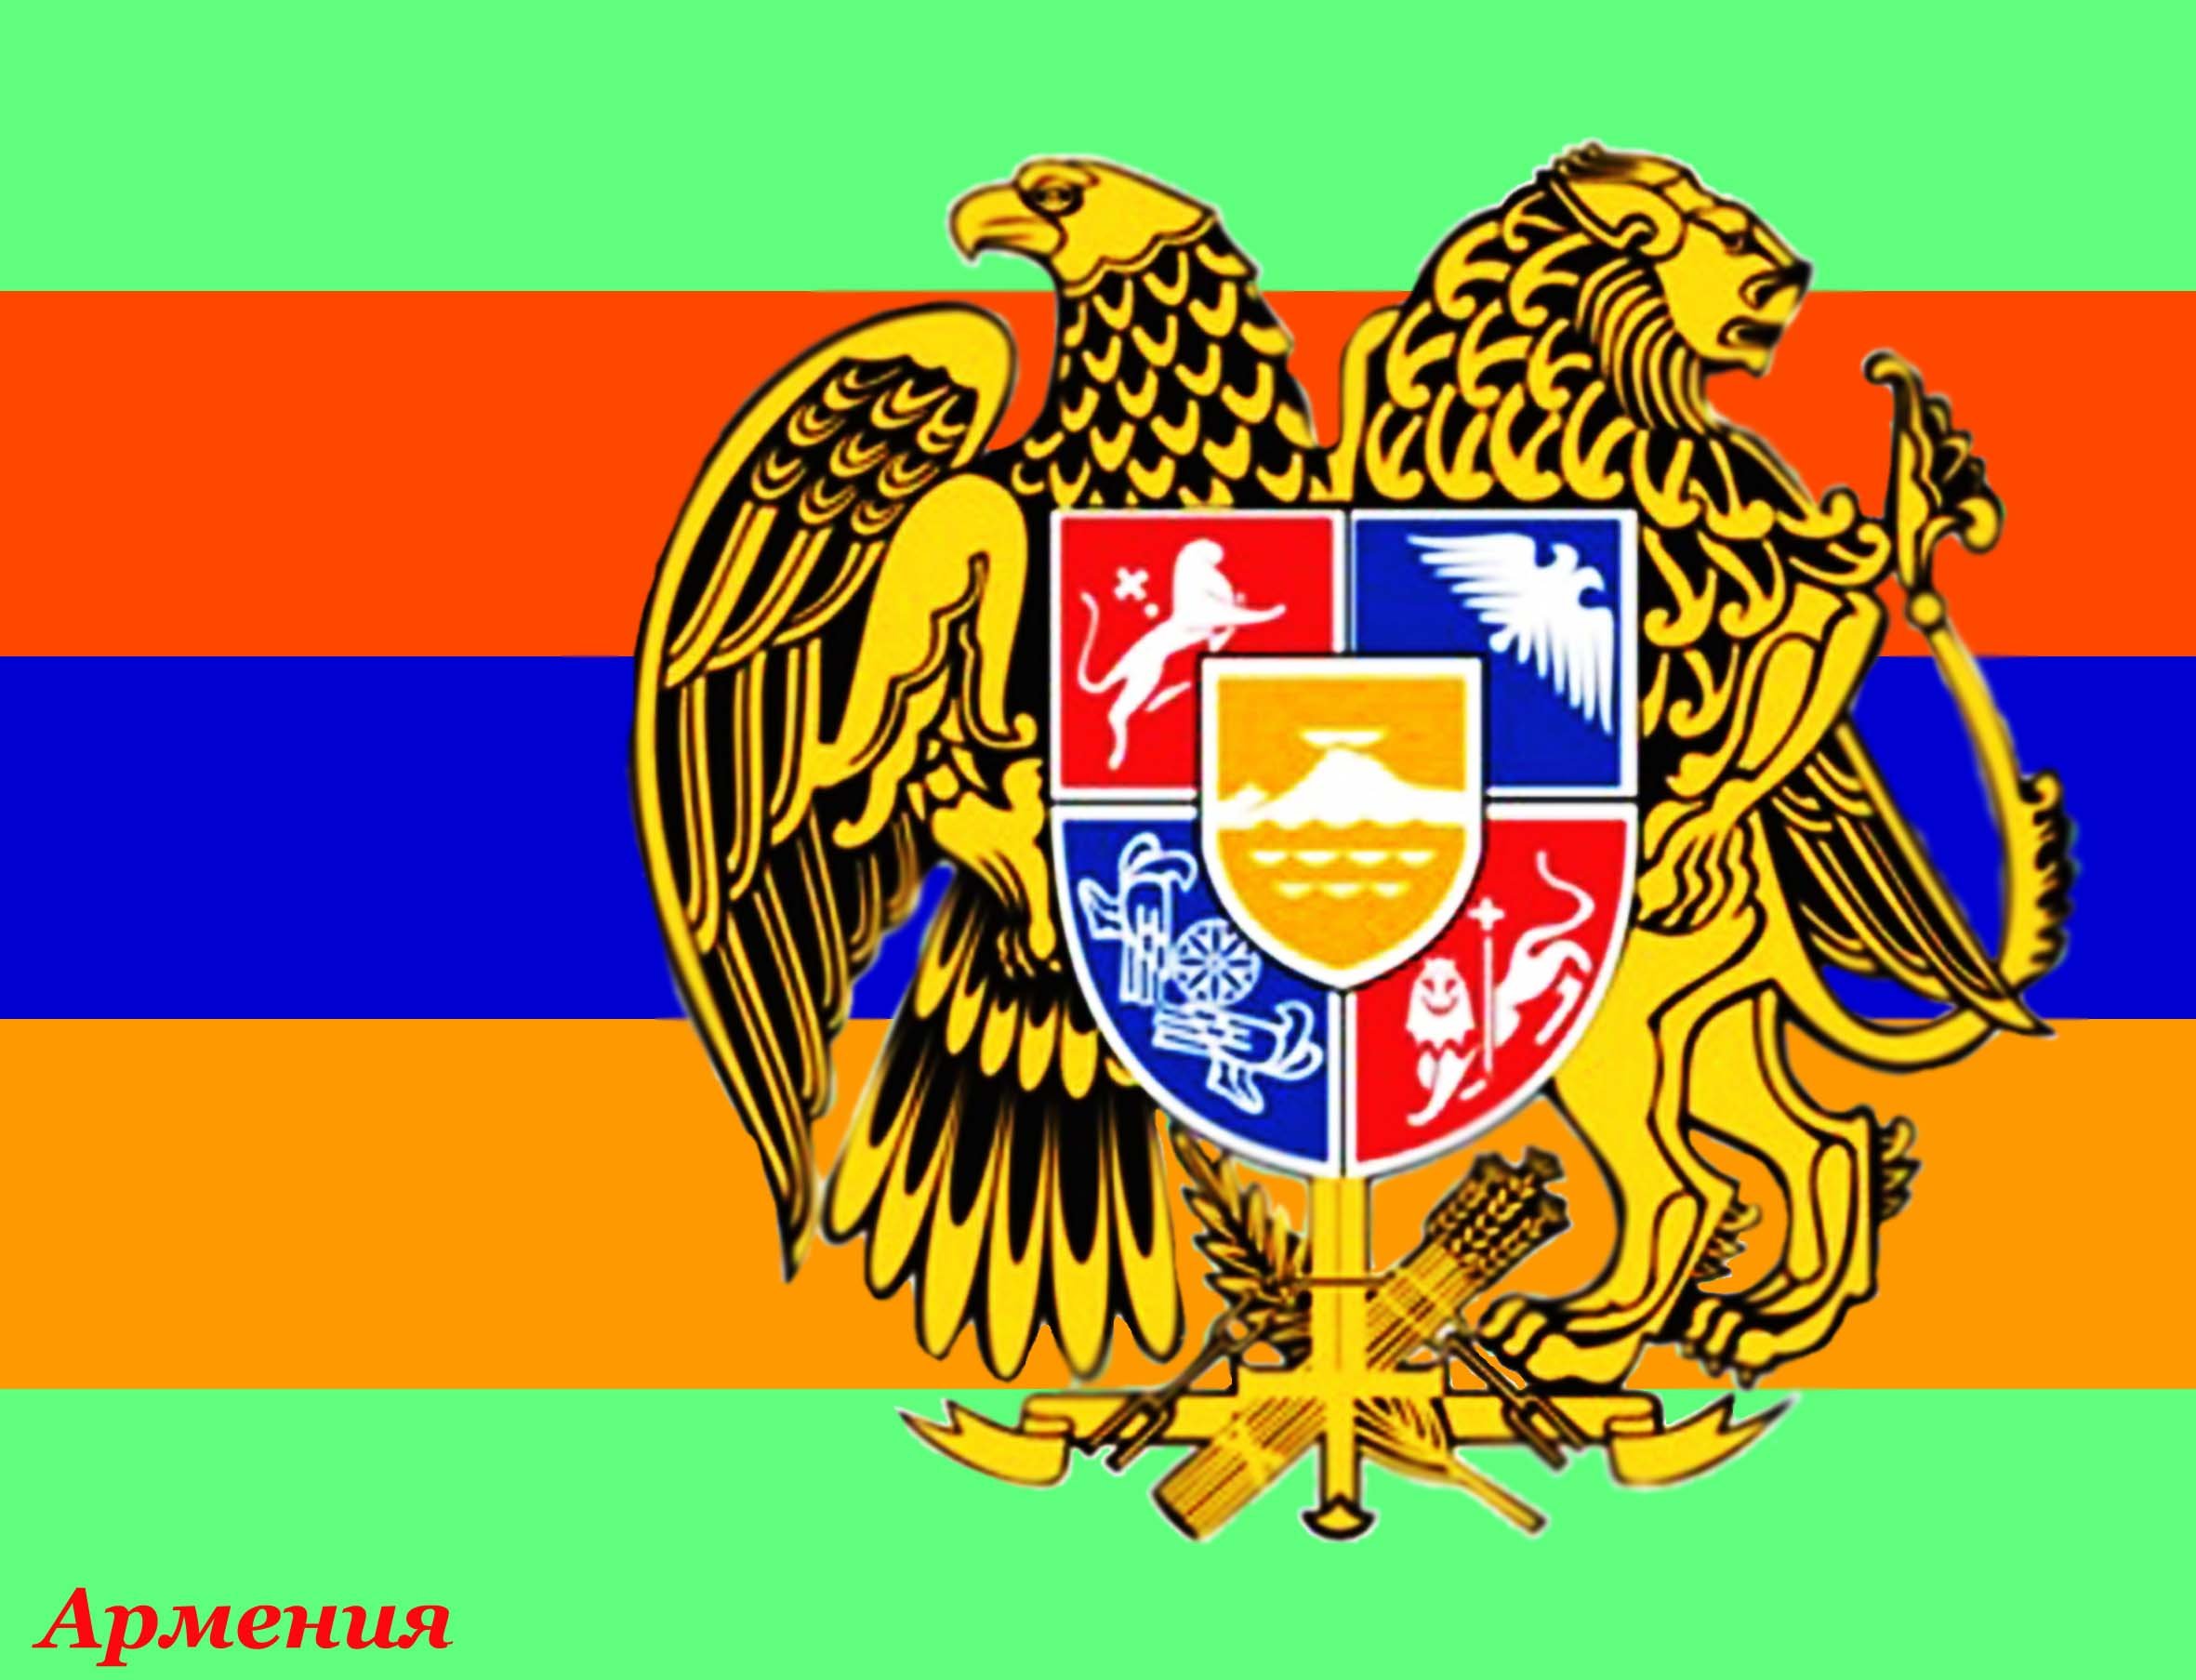 Армянский флаг и герб